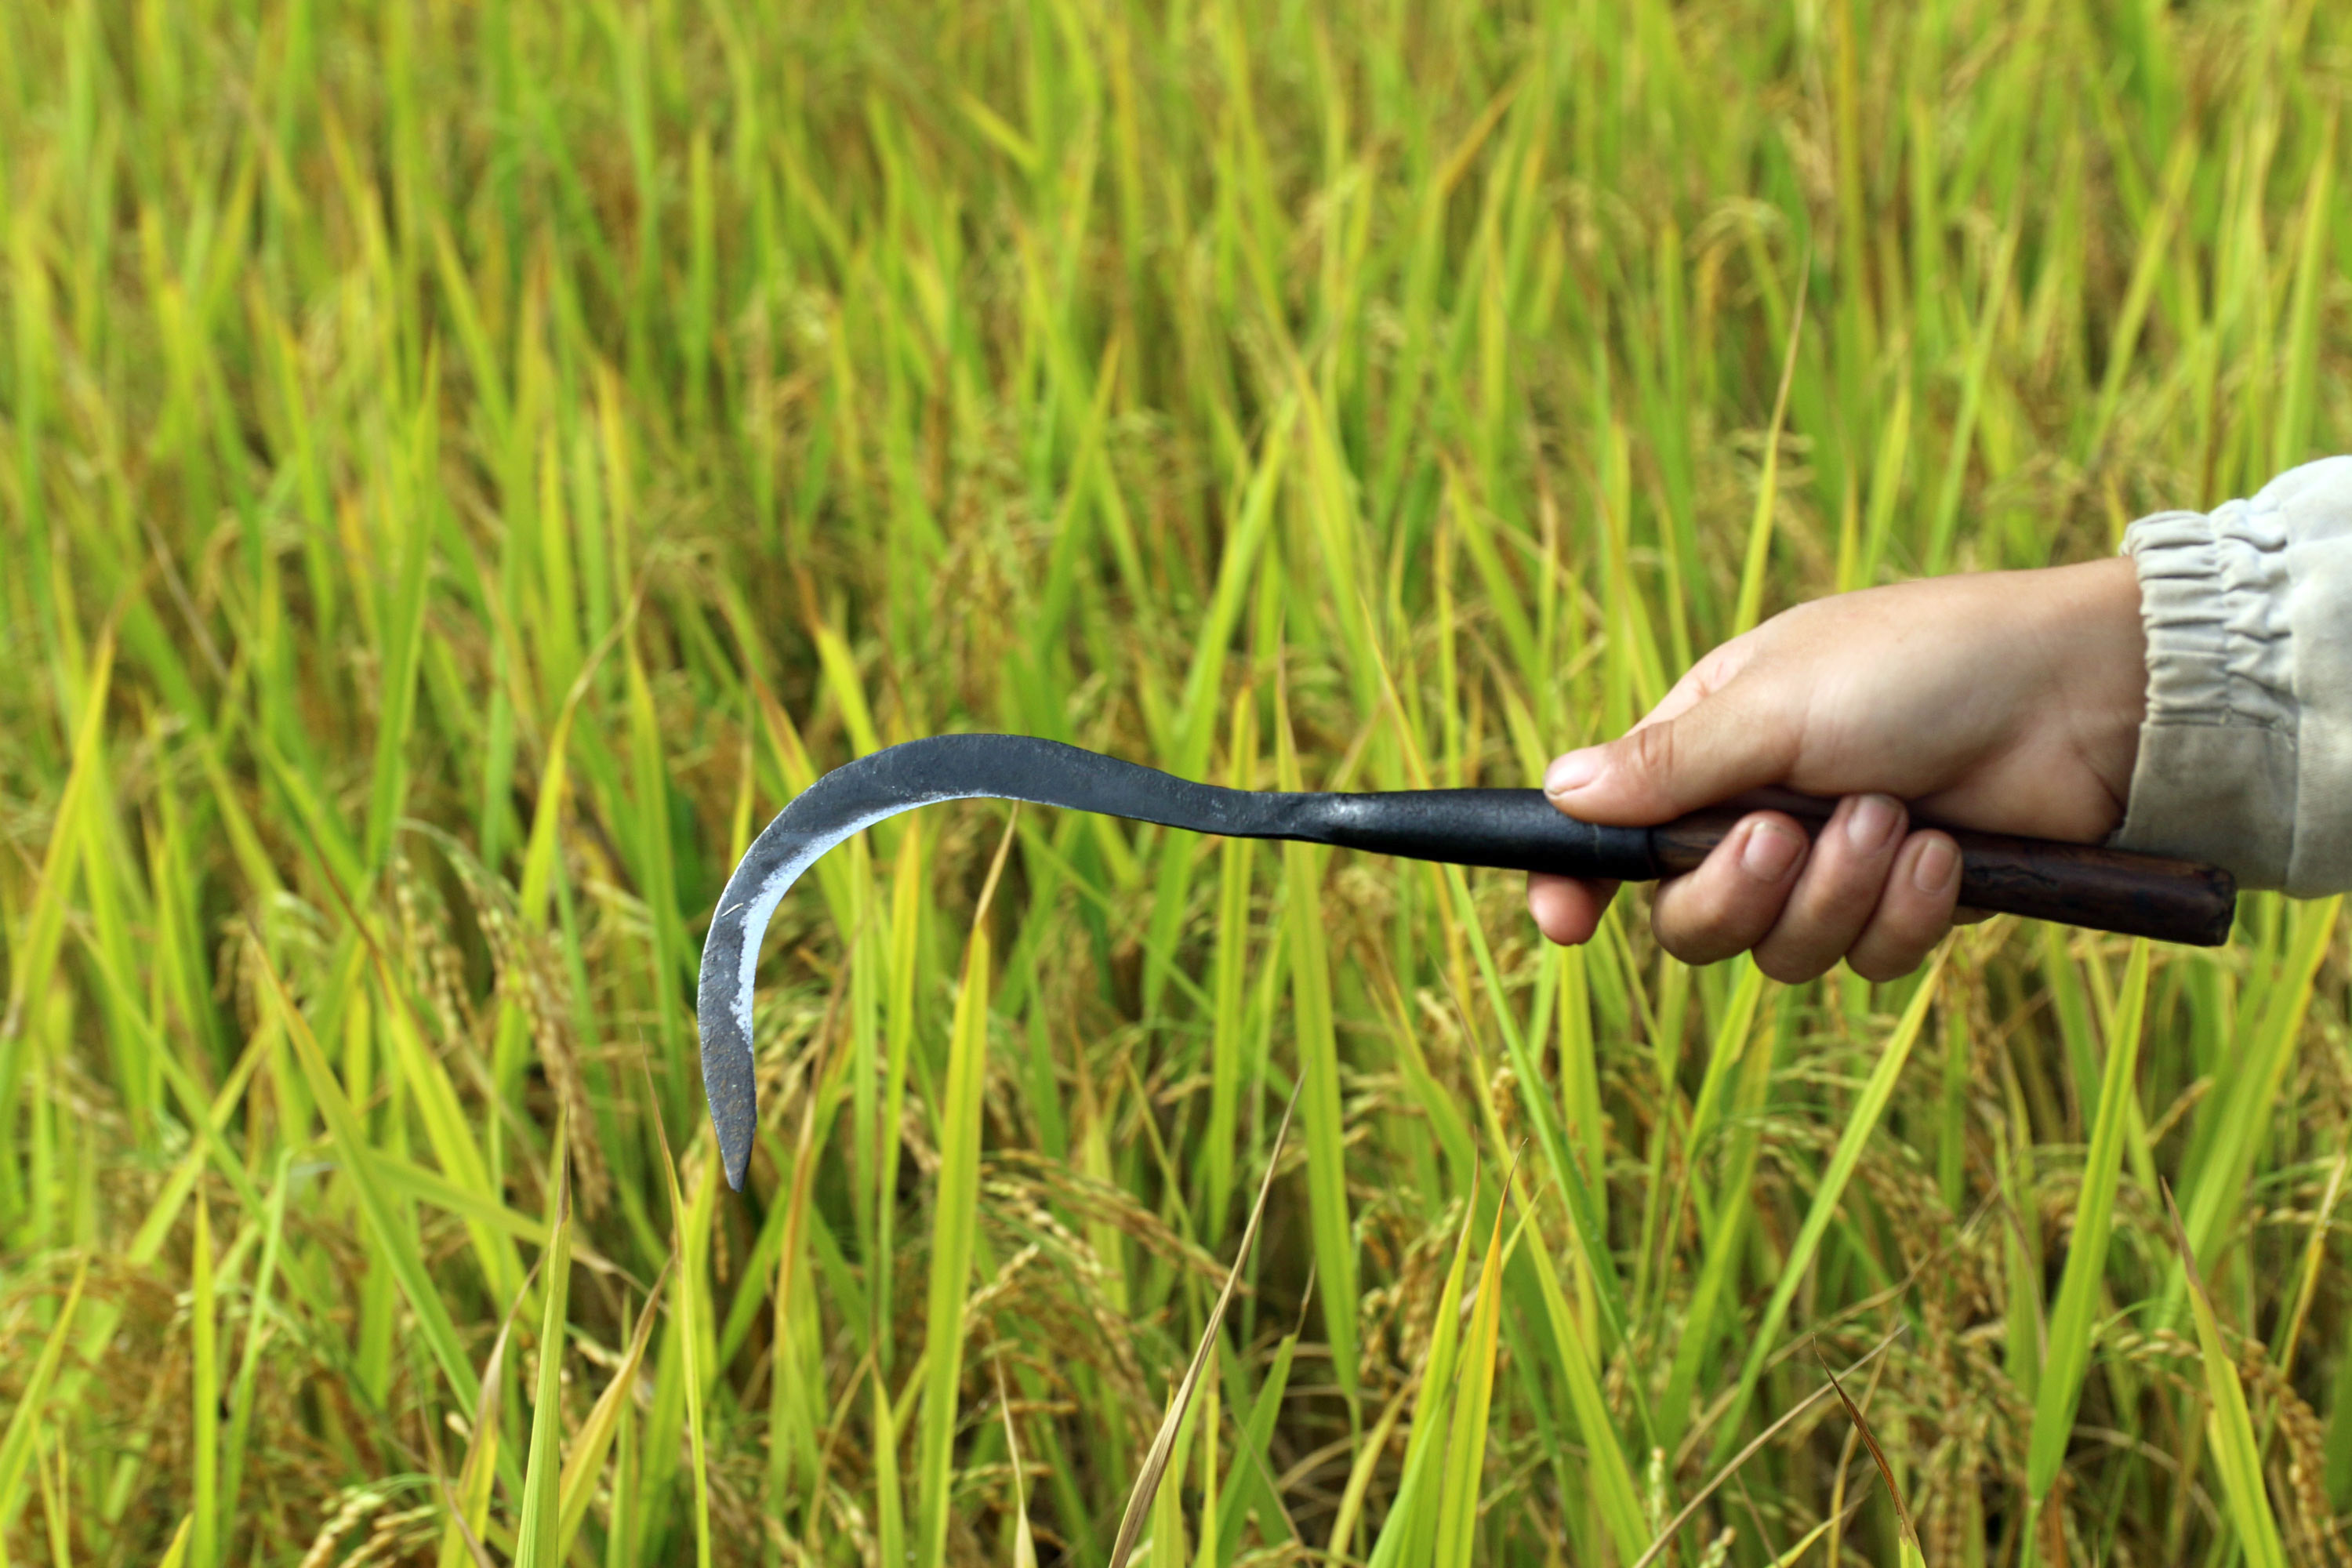 Để gặt lúa, người Mông cũng dùng dụng cụ liềm. Tuy nhiên, chiếc liềm của cộng đồng này được chế tạo nhỏ gọn hơn nhưng có độ sắc bén và độ bền rất cao. Ảnh: Đào Thọ